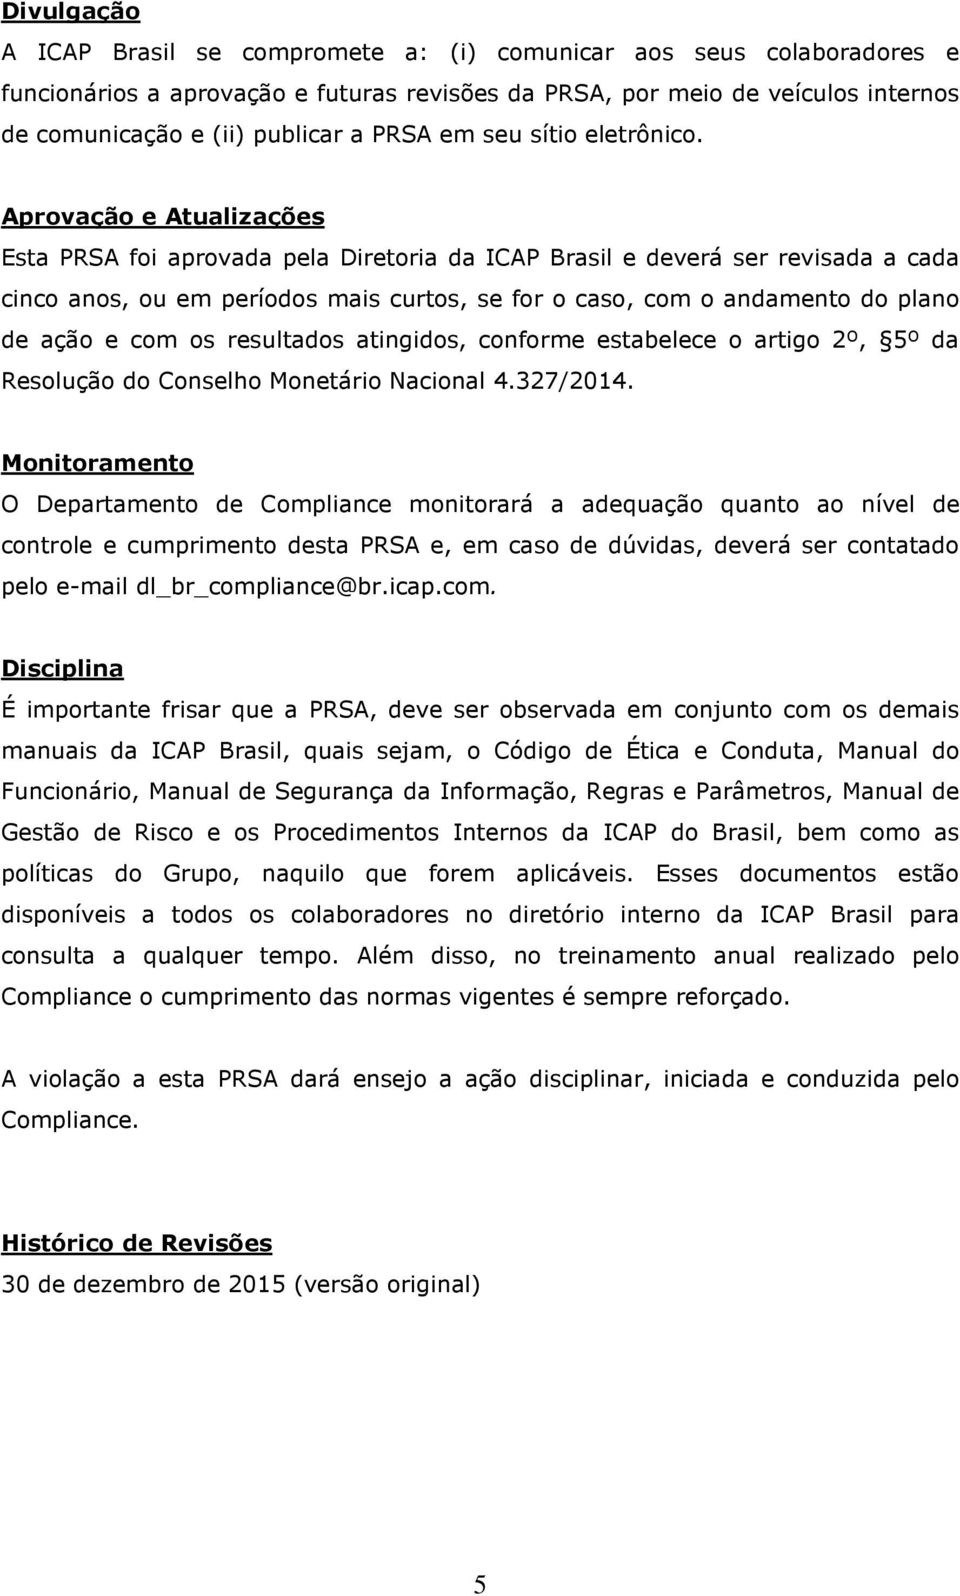 Aprovação e Atualizações Esta PRSA foi aprovada pela Diretoria da ICAP Brasil e deverá ser revisada a cada cinco anos, ou em períodos mais curtos, se for o caso, com o andamento do plano de ação e